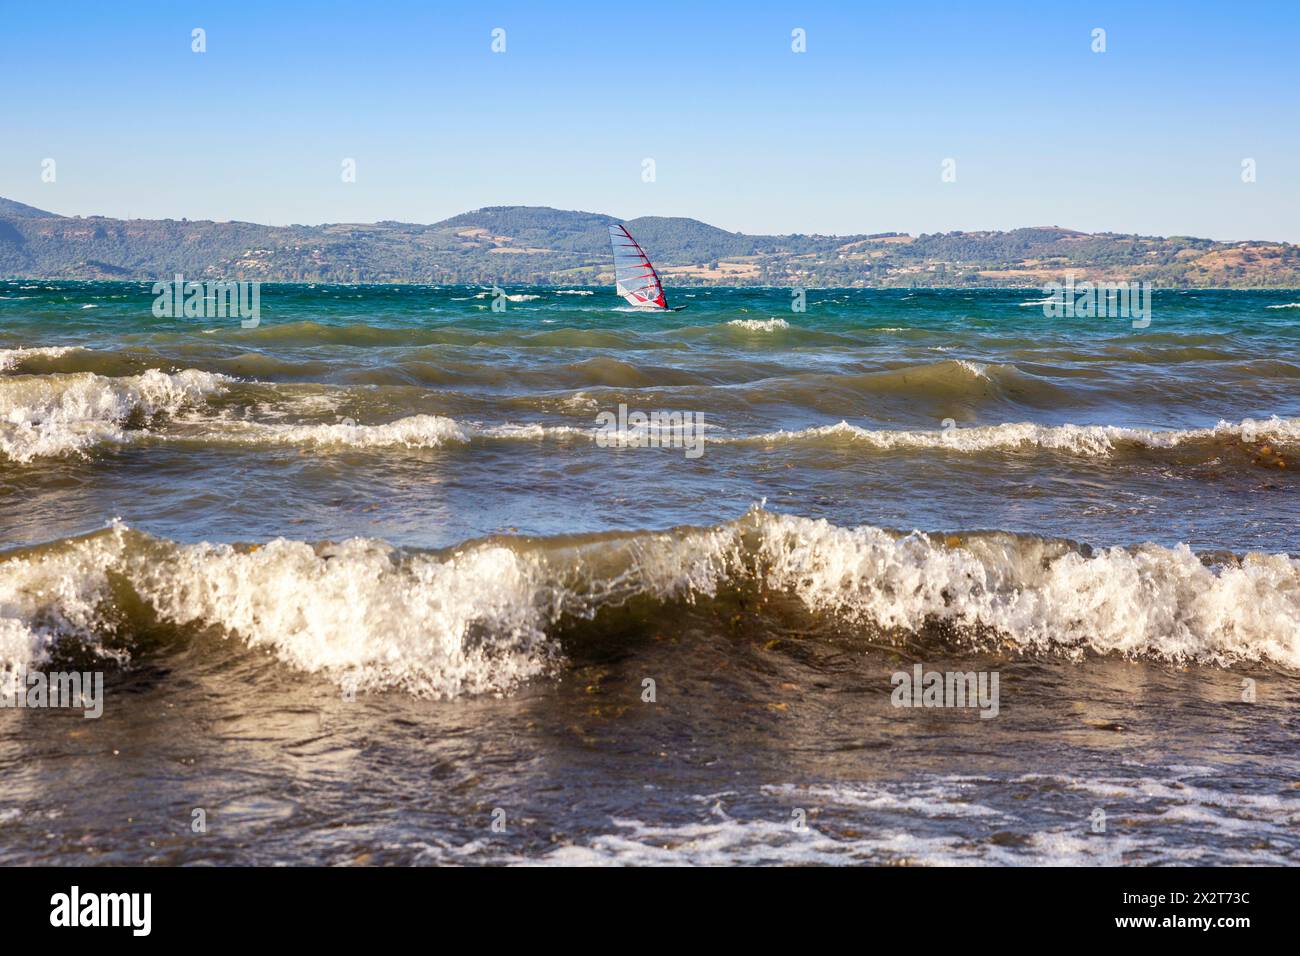 Italie, Latium, Anguillara Sabazia, vagues sur le lac Bracciano avec planche à voile en arrière-plan Banque D'Images